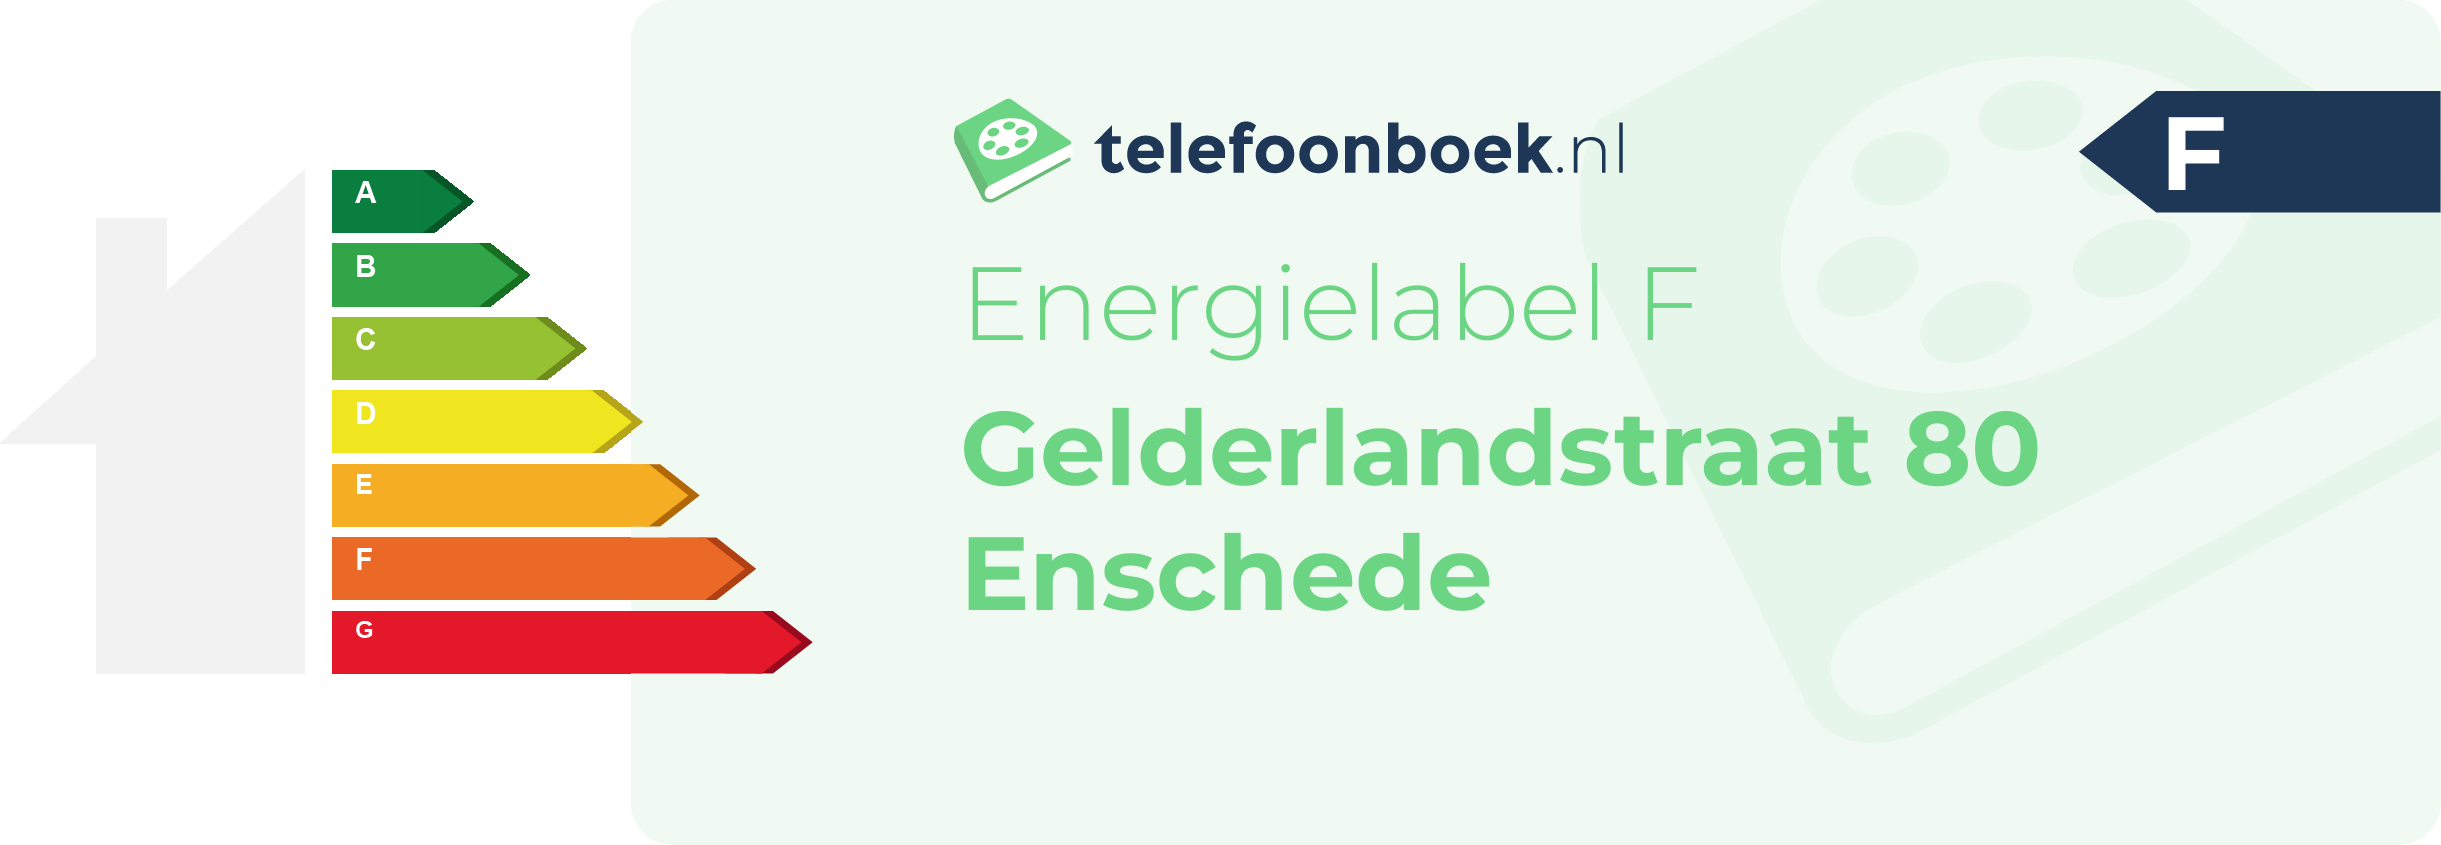 Energielabel Gelderlandstraat 80 Enschede